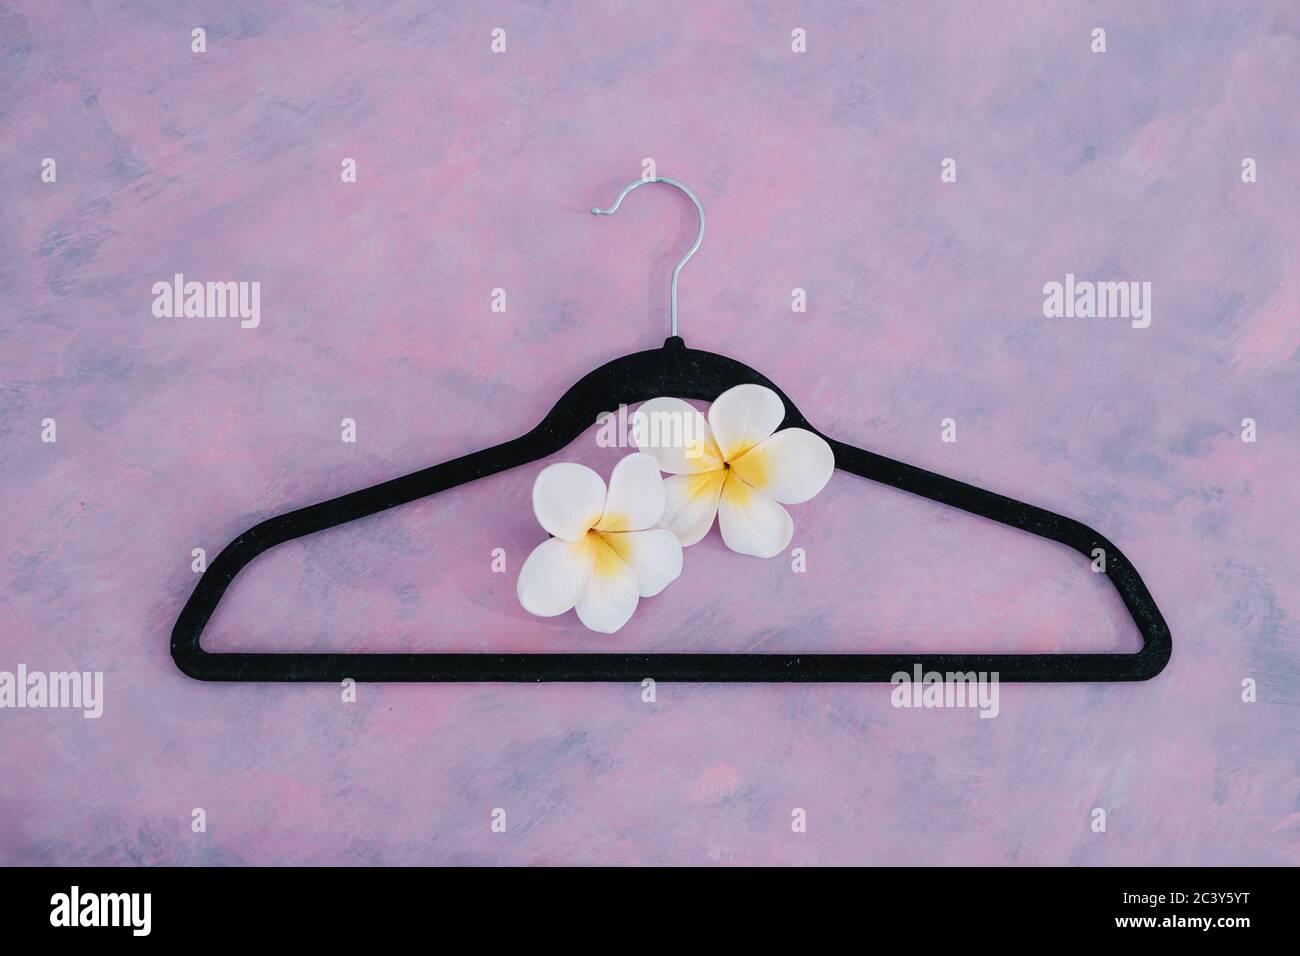 estilo y concepto de la industria de la moda, percha ropa de terciopelo en el escritorio rosa con flor Foto de stock